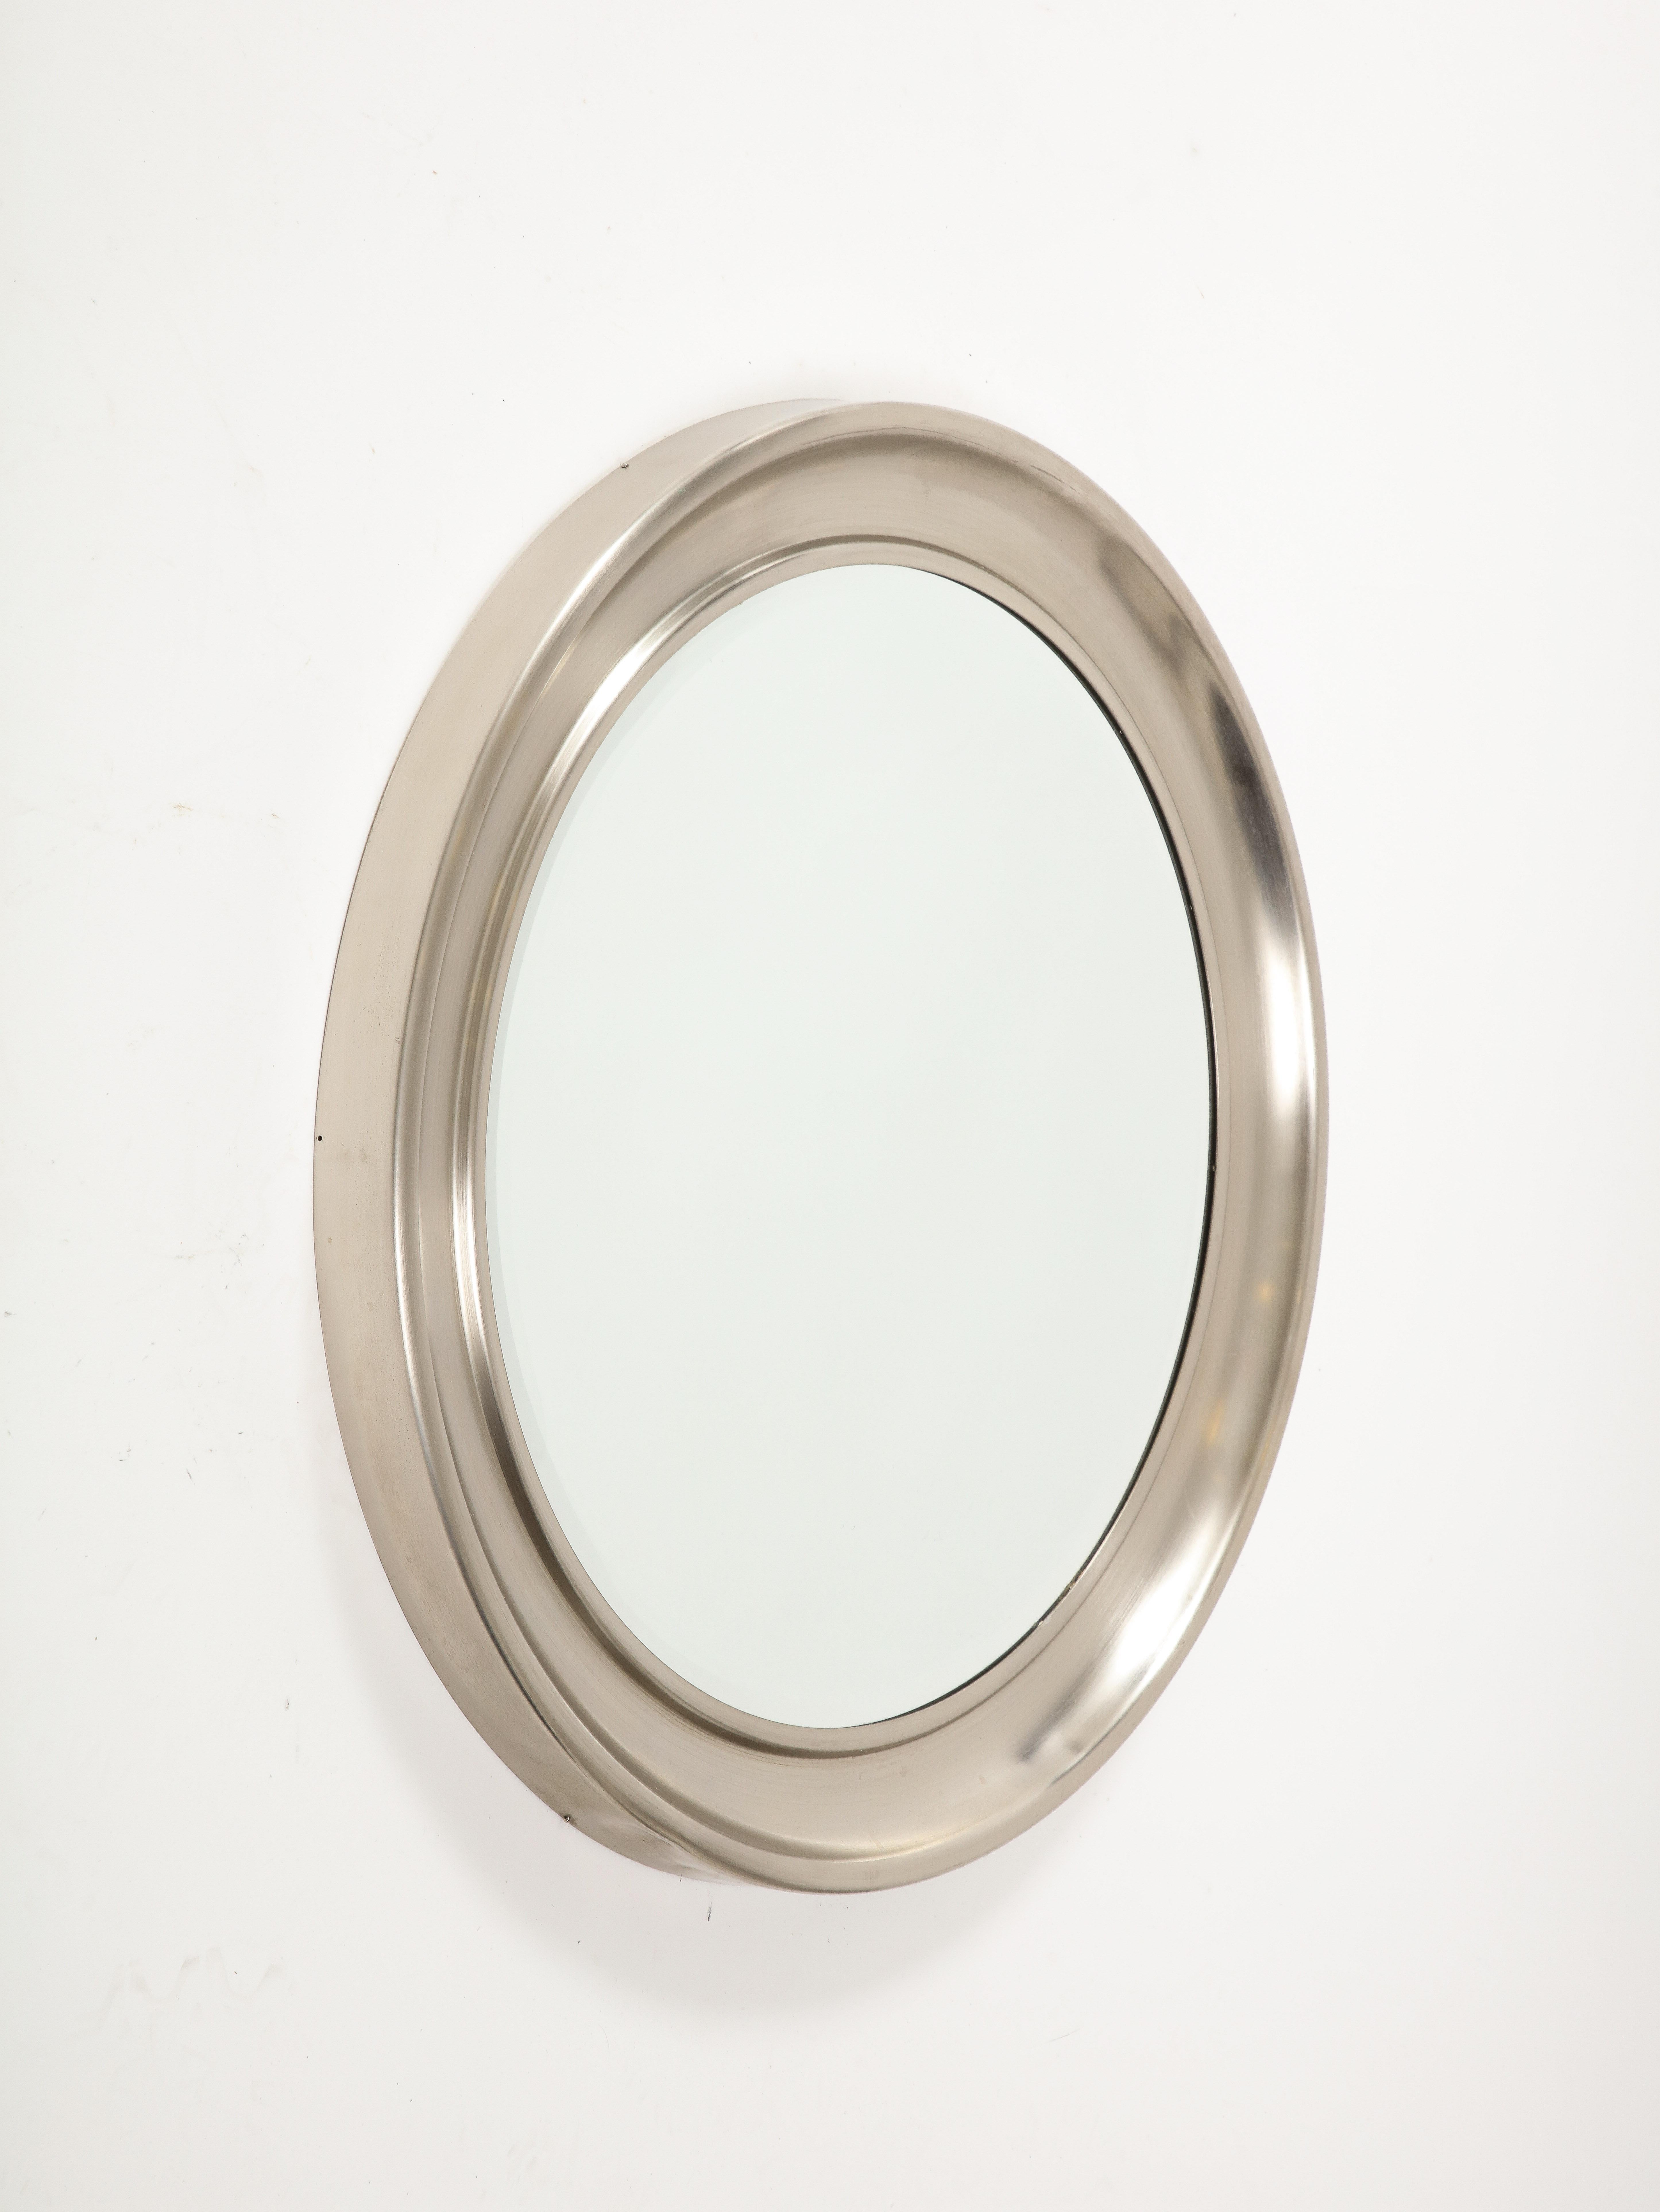 Sergio Mazza, B. 1932, ‘Narcisco’mirror, Italy, 1970 1